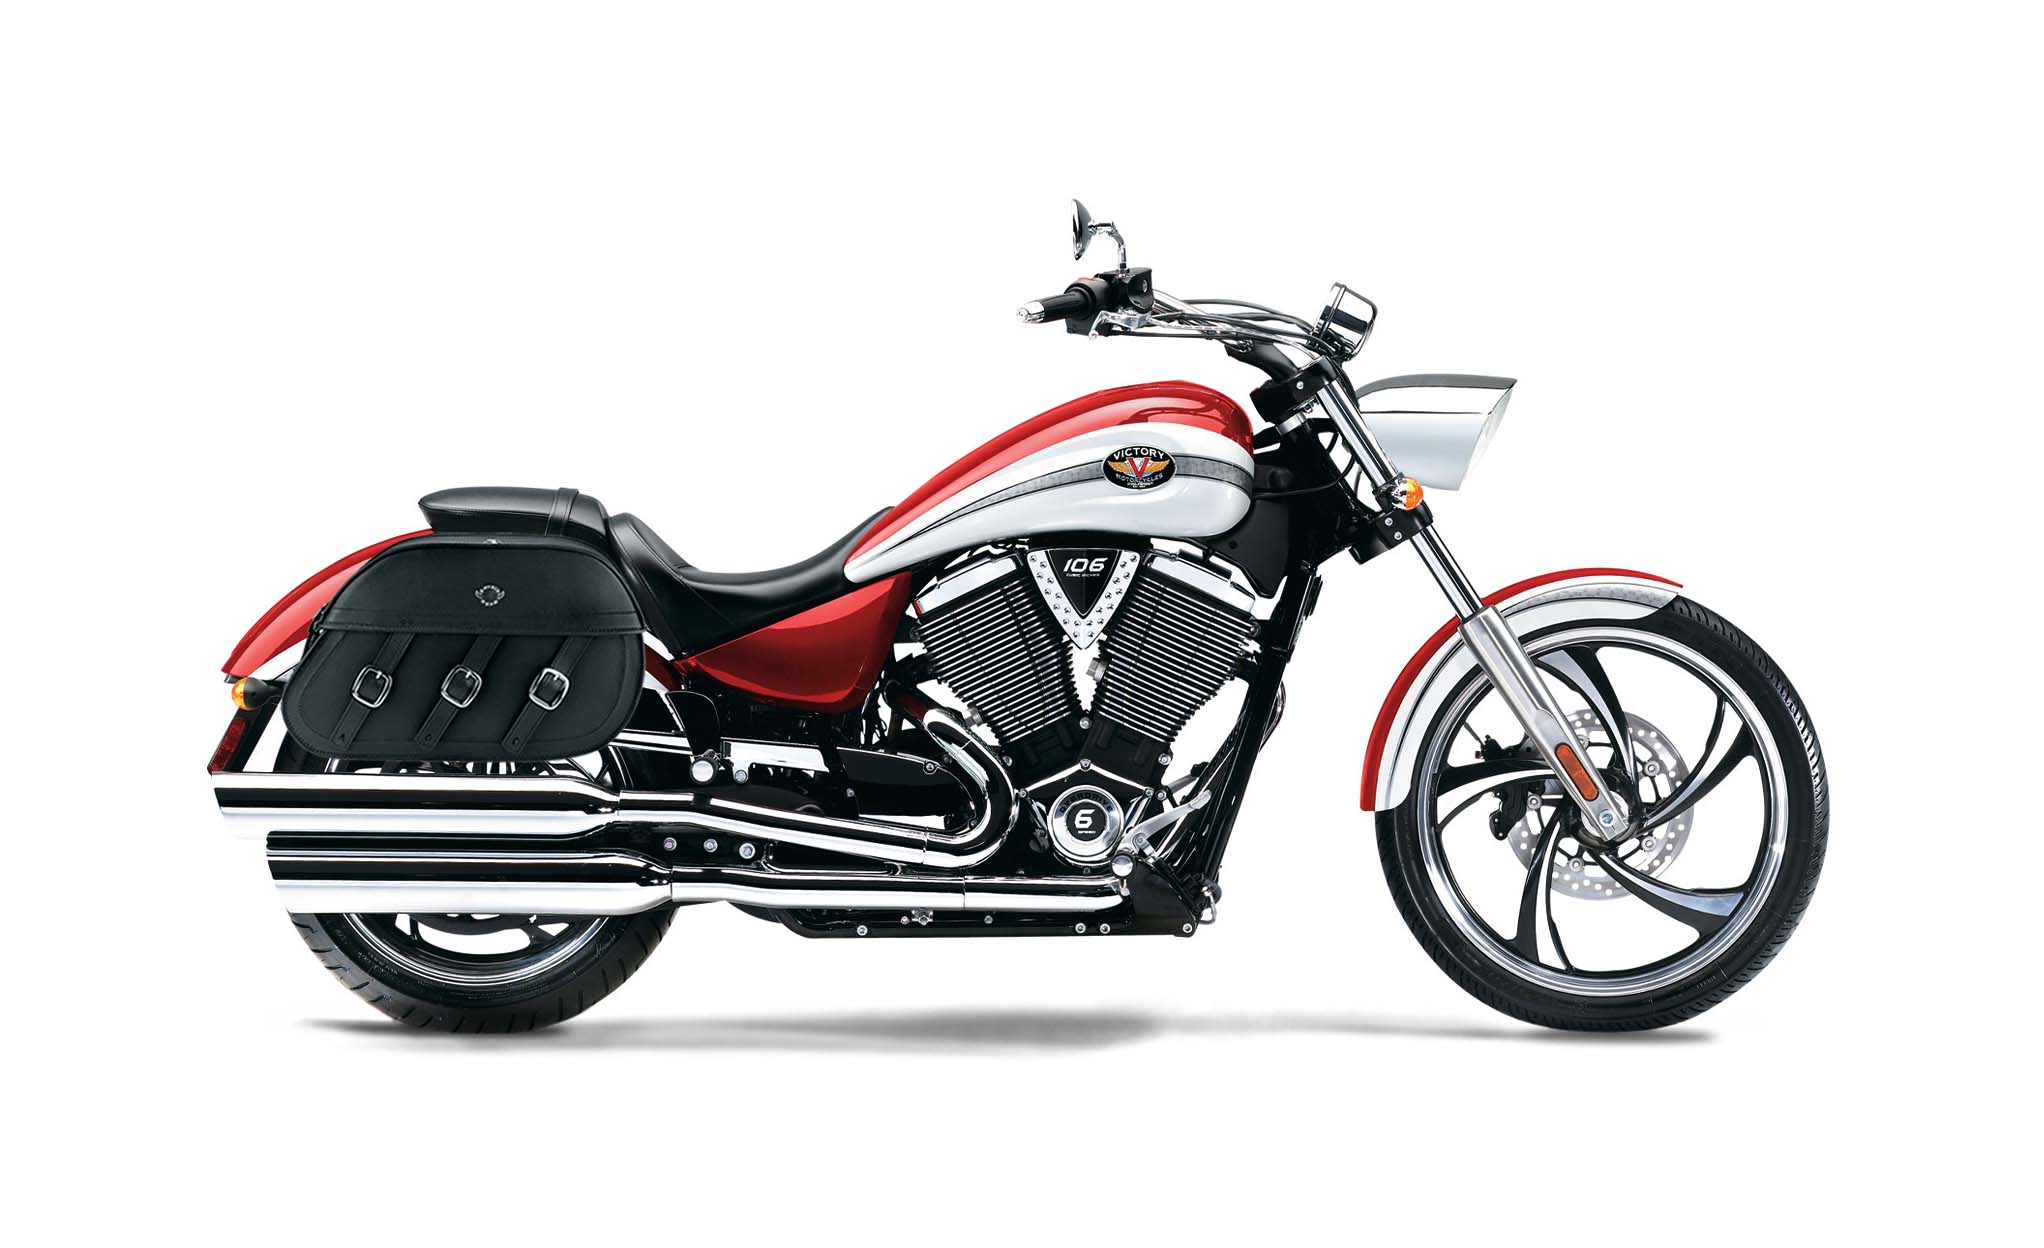 Viking Trianon Extra Large Victory Vegas Leather Motorcycle Saddlebags on Bike Photo @expand